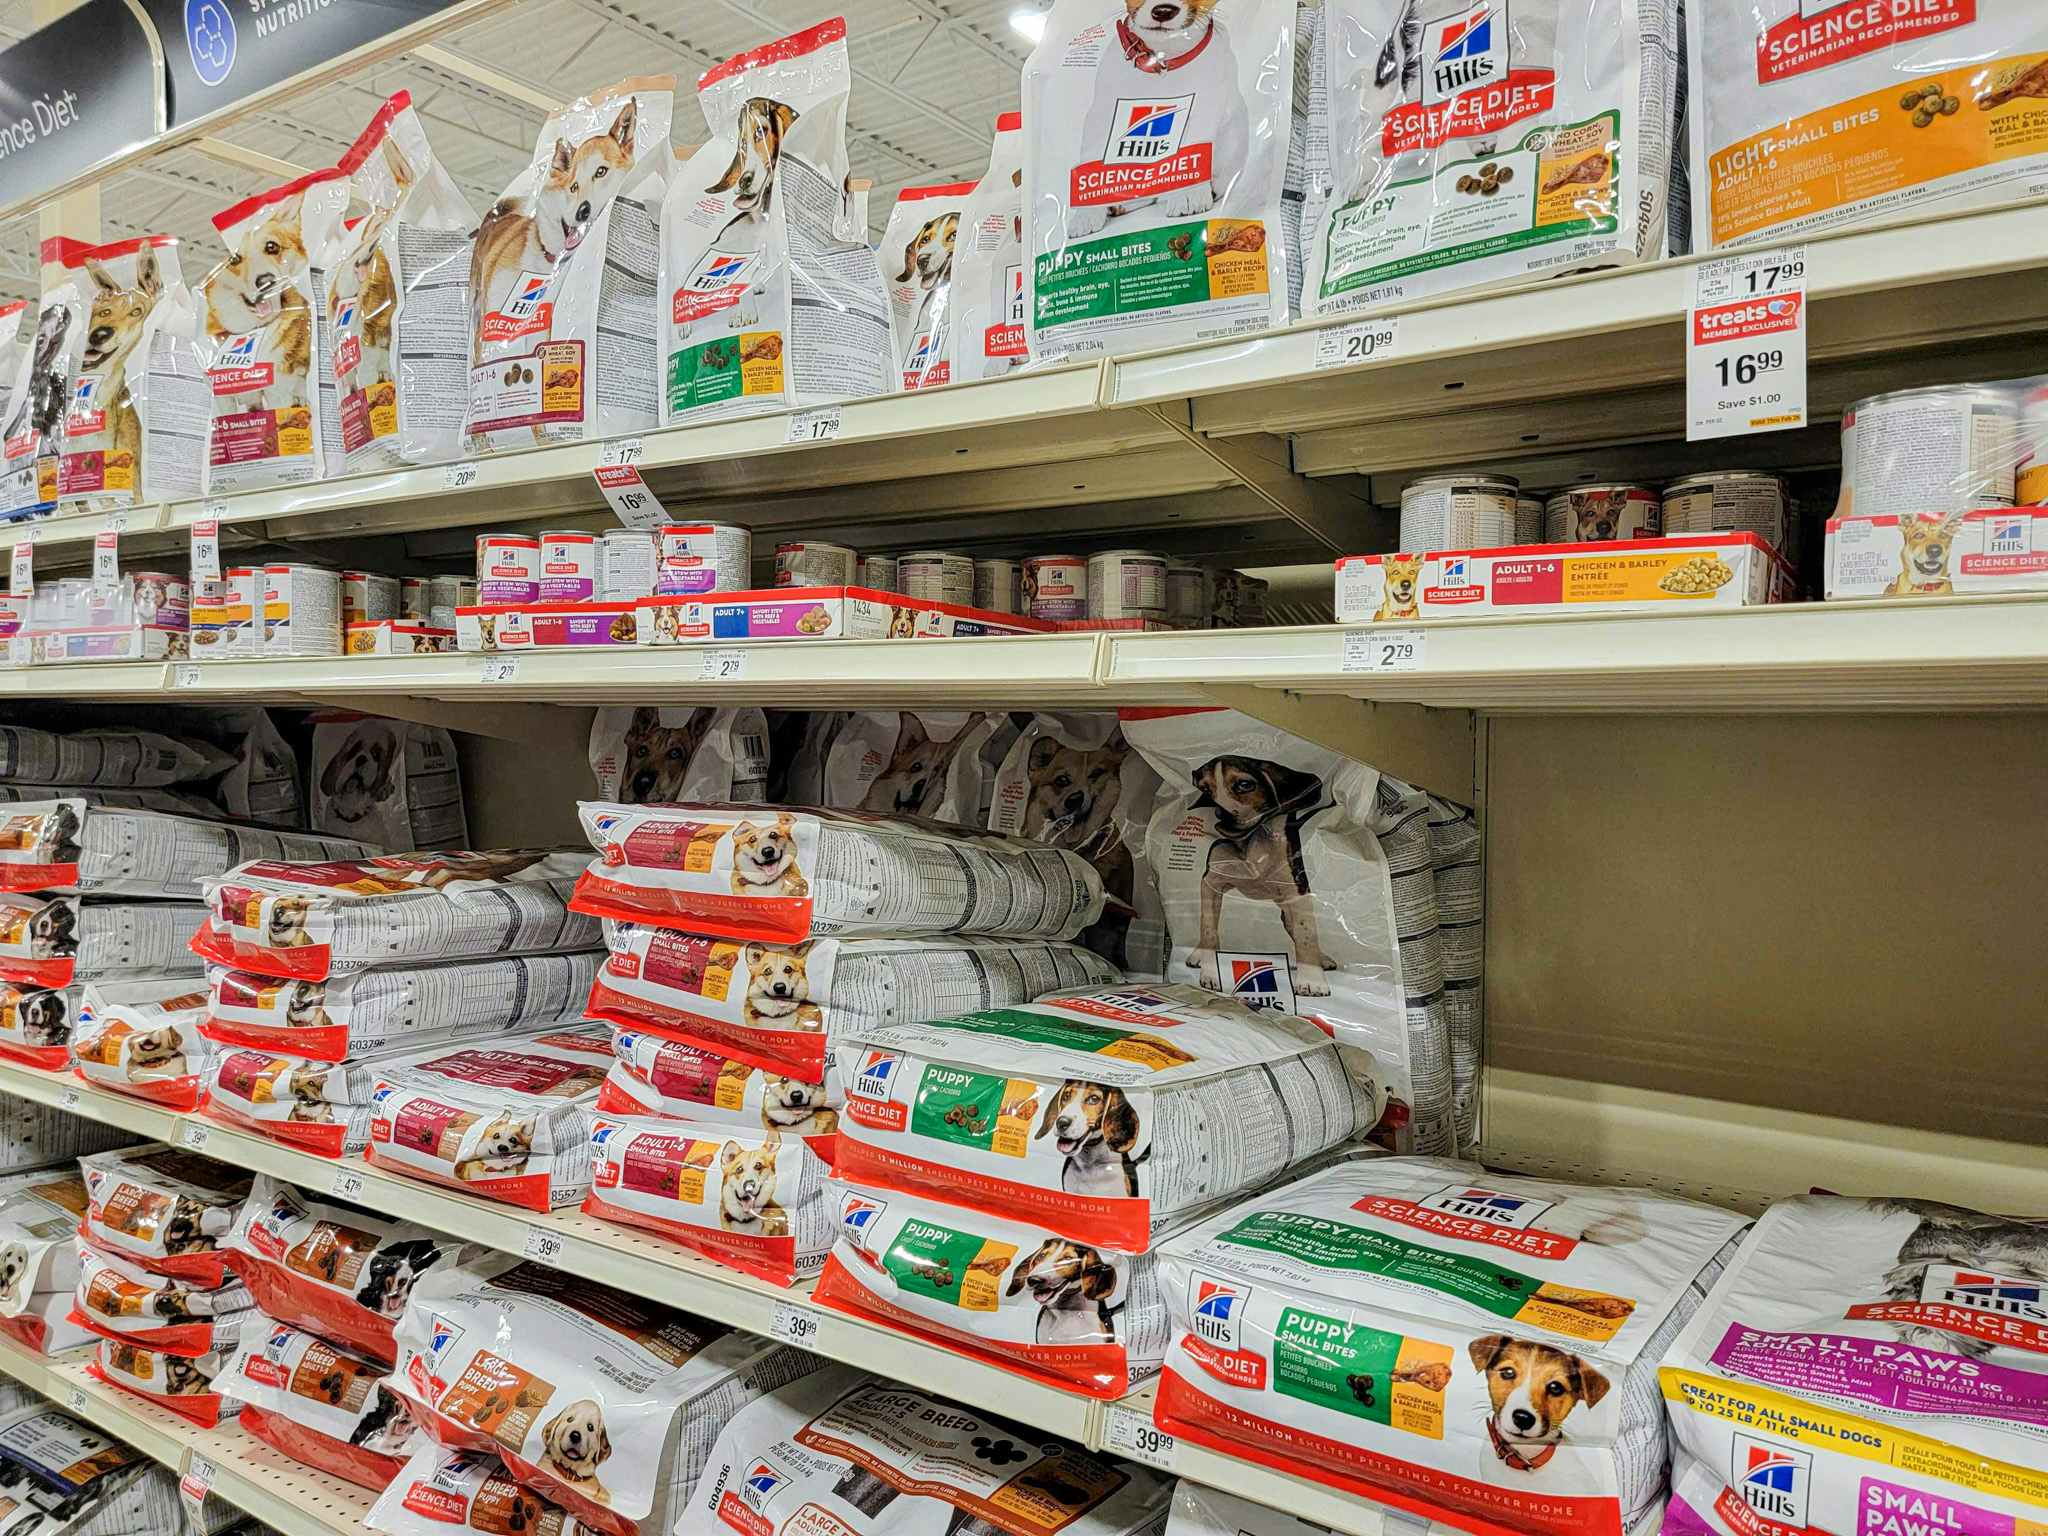 hills science diet dog food varieties on store shelves